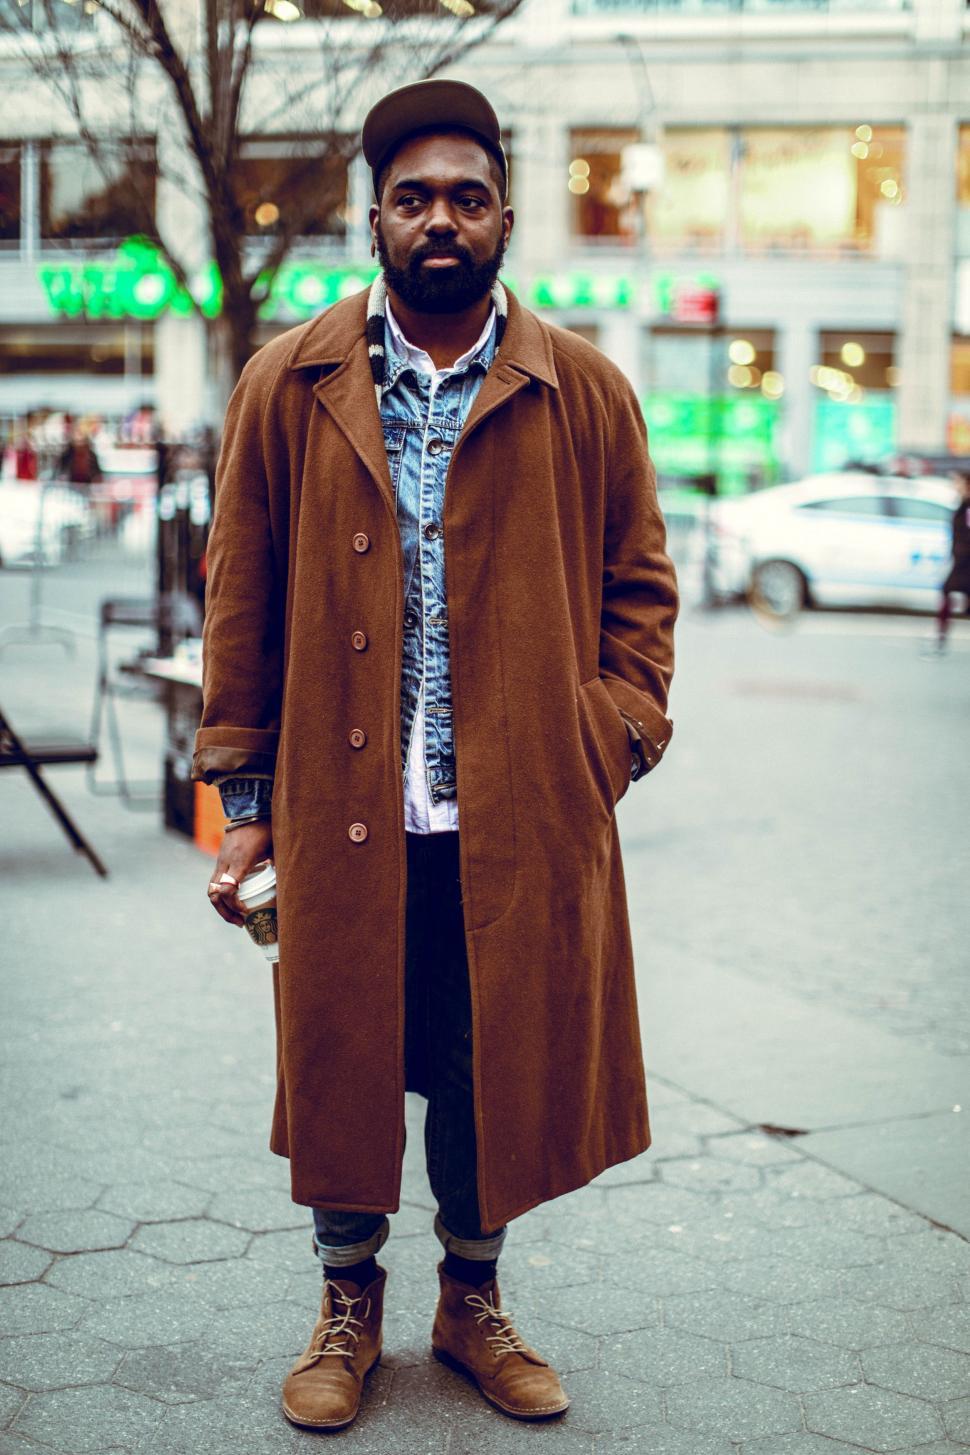 Free Image of Man Standing on Sidewalk in Brown Coat 